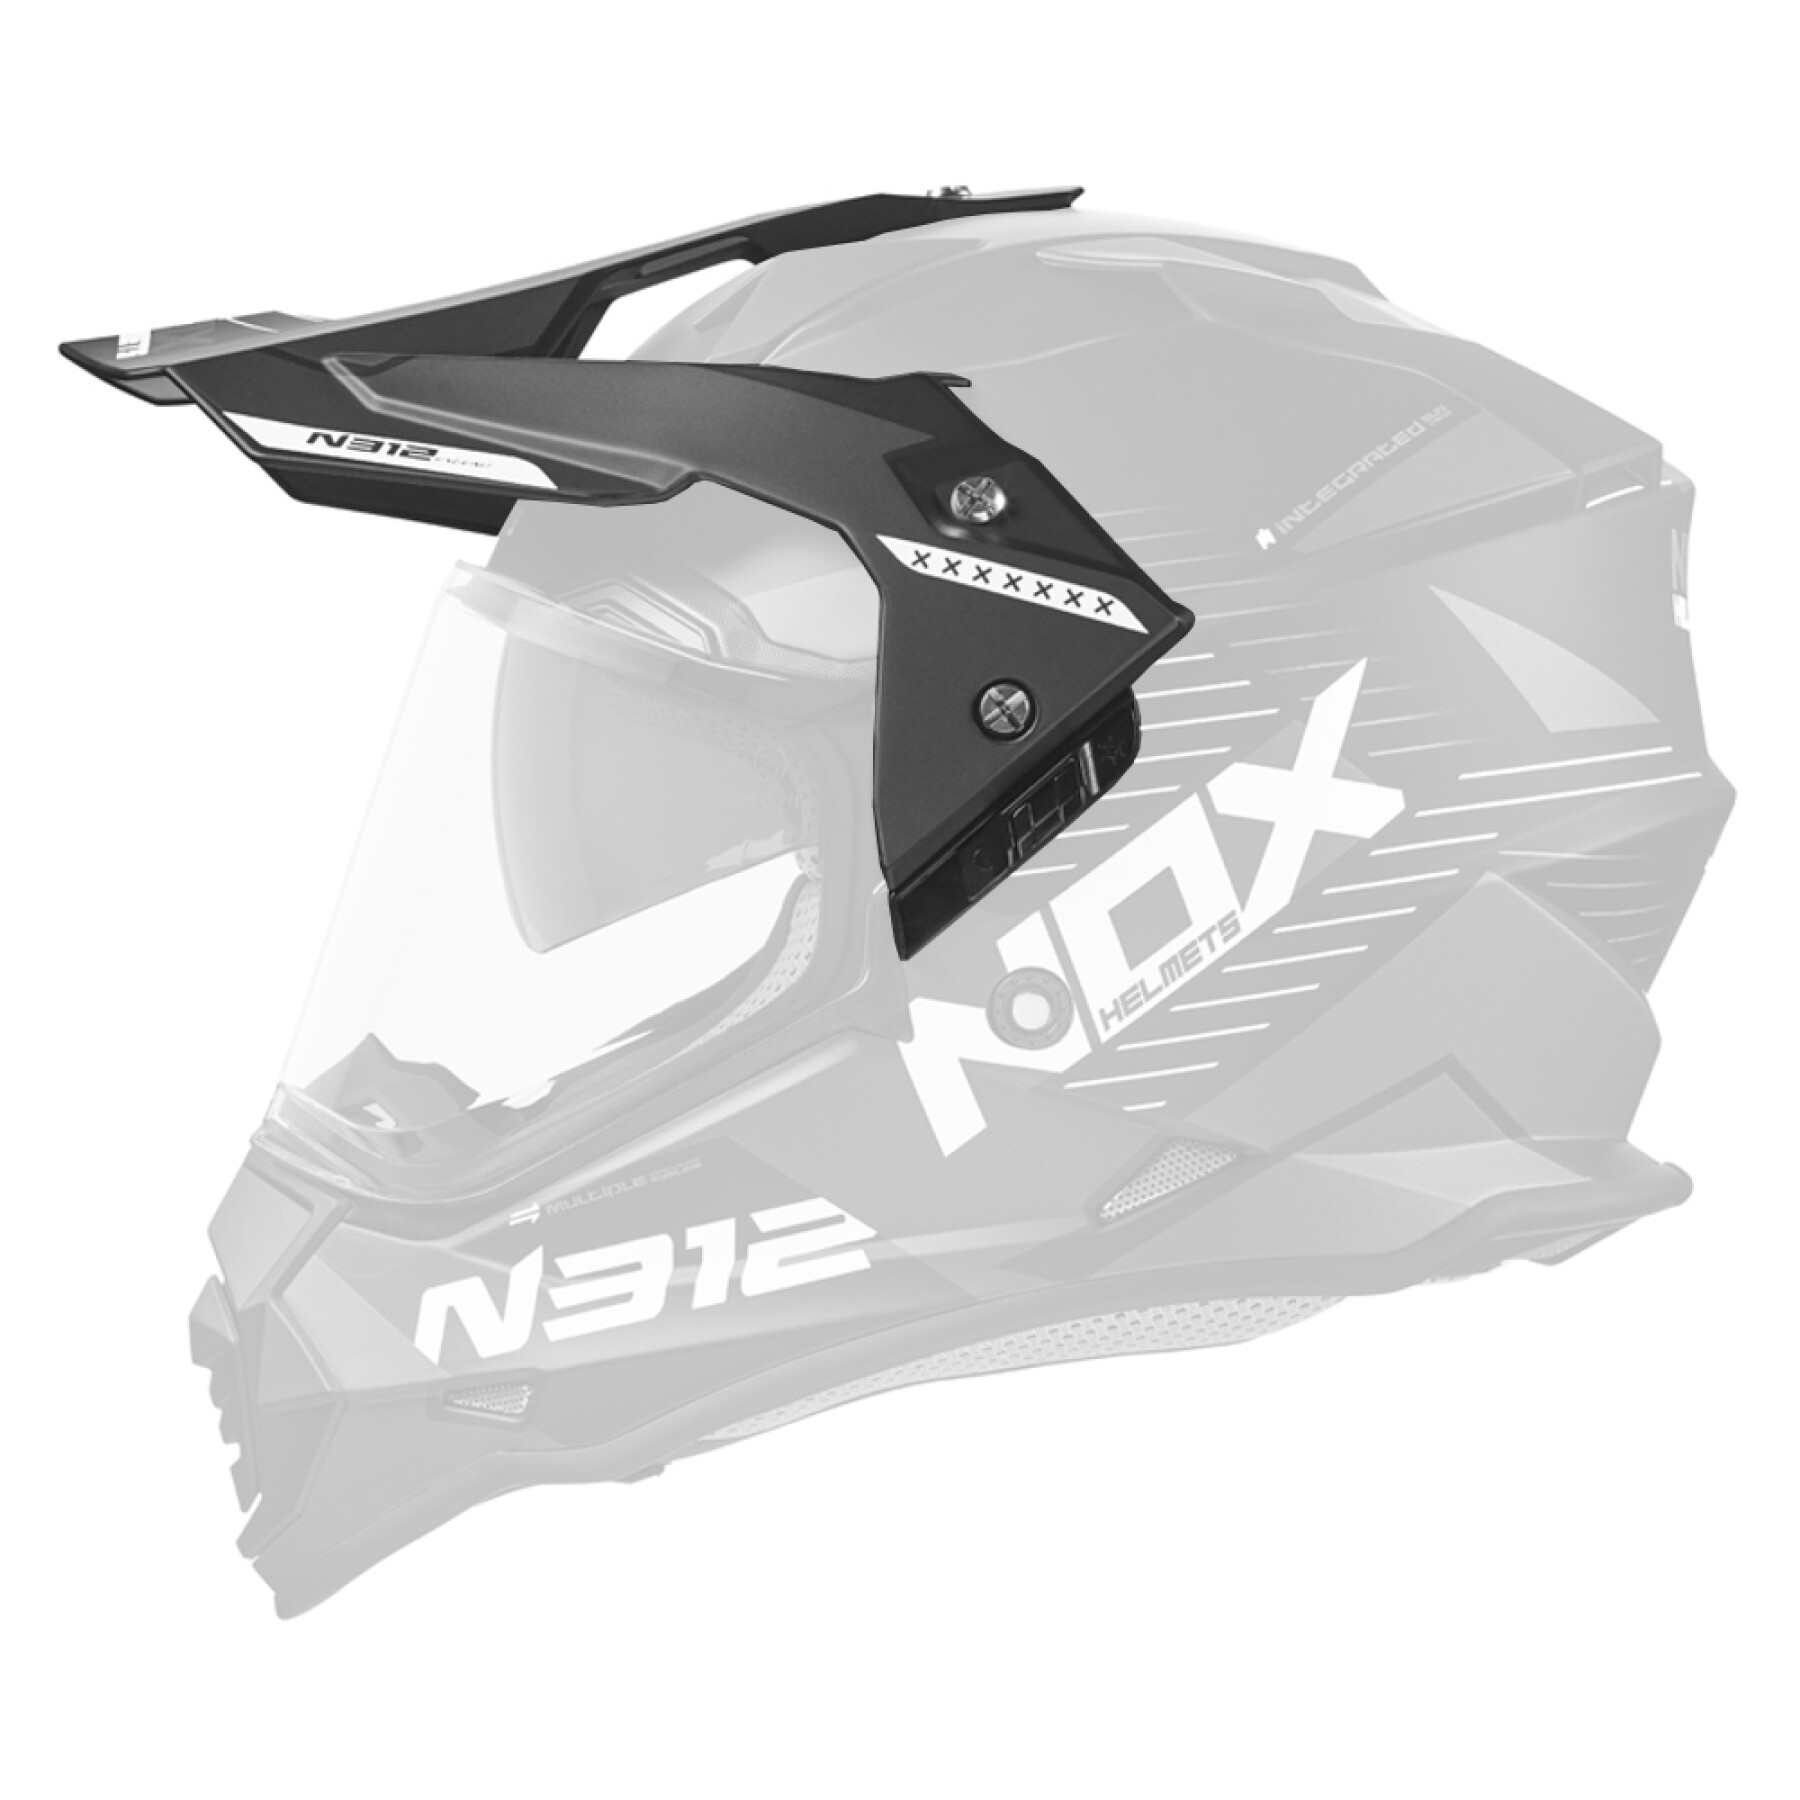 Motorcycle helmet visor Nox 312 Extend